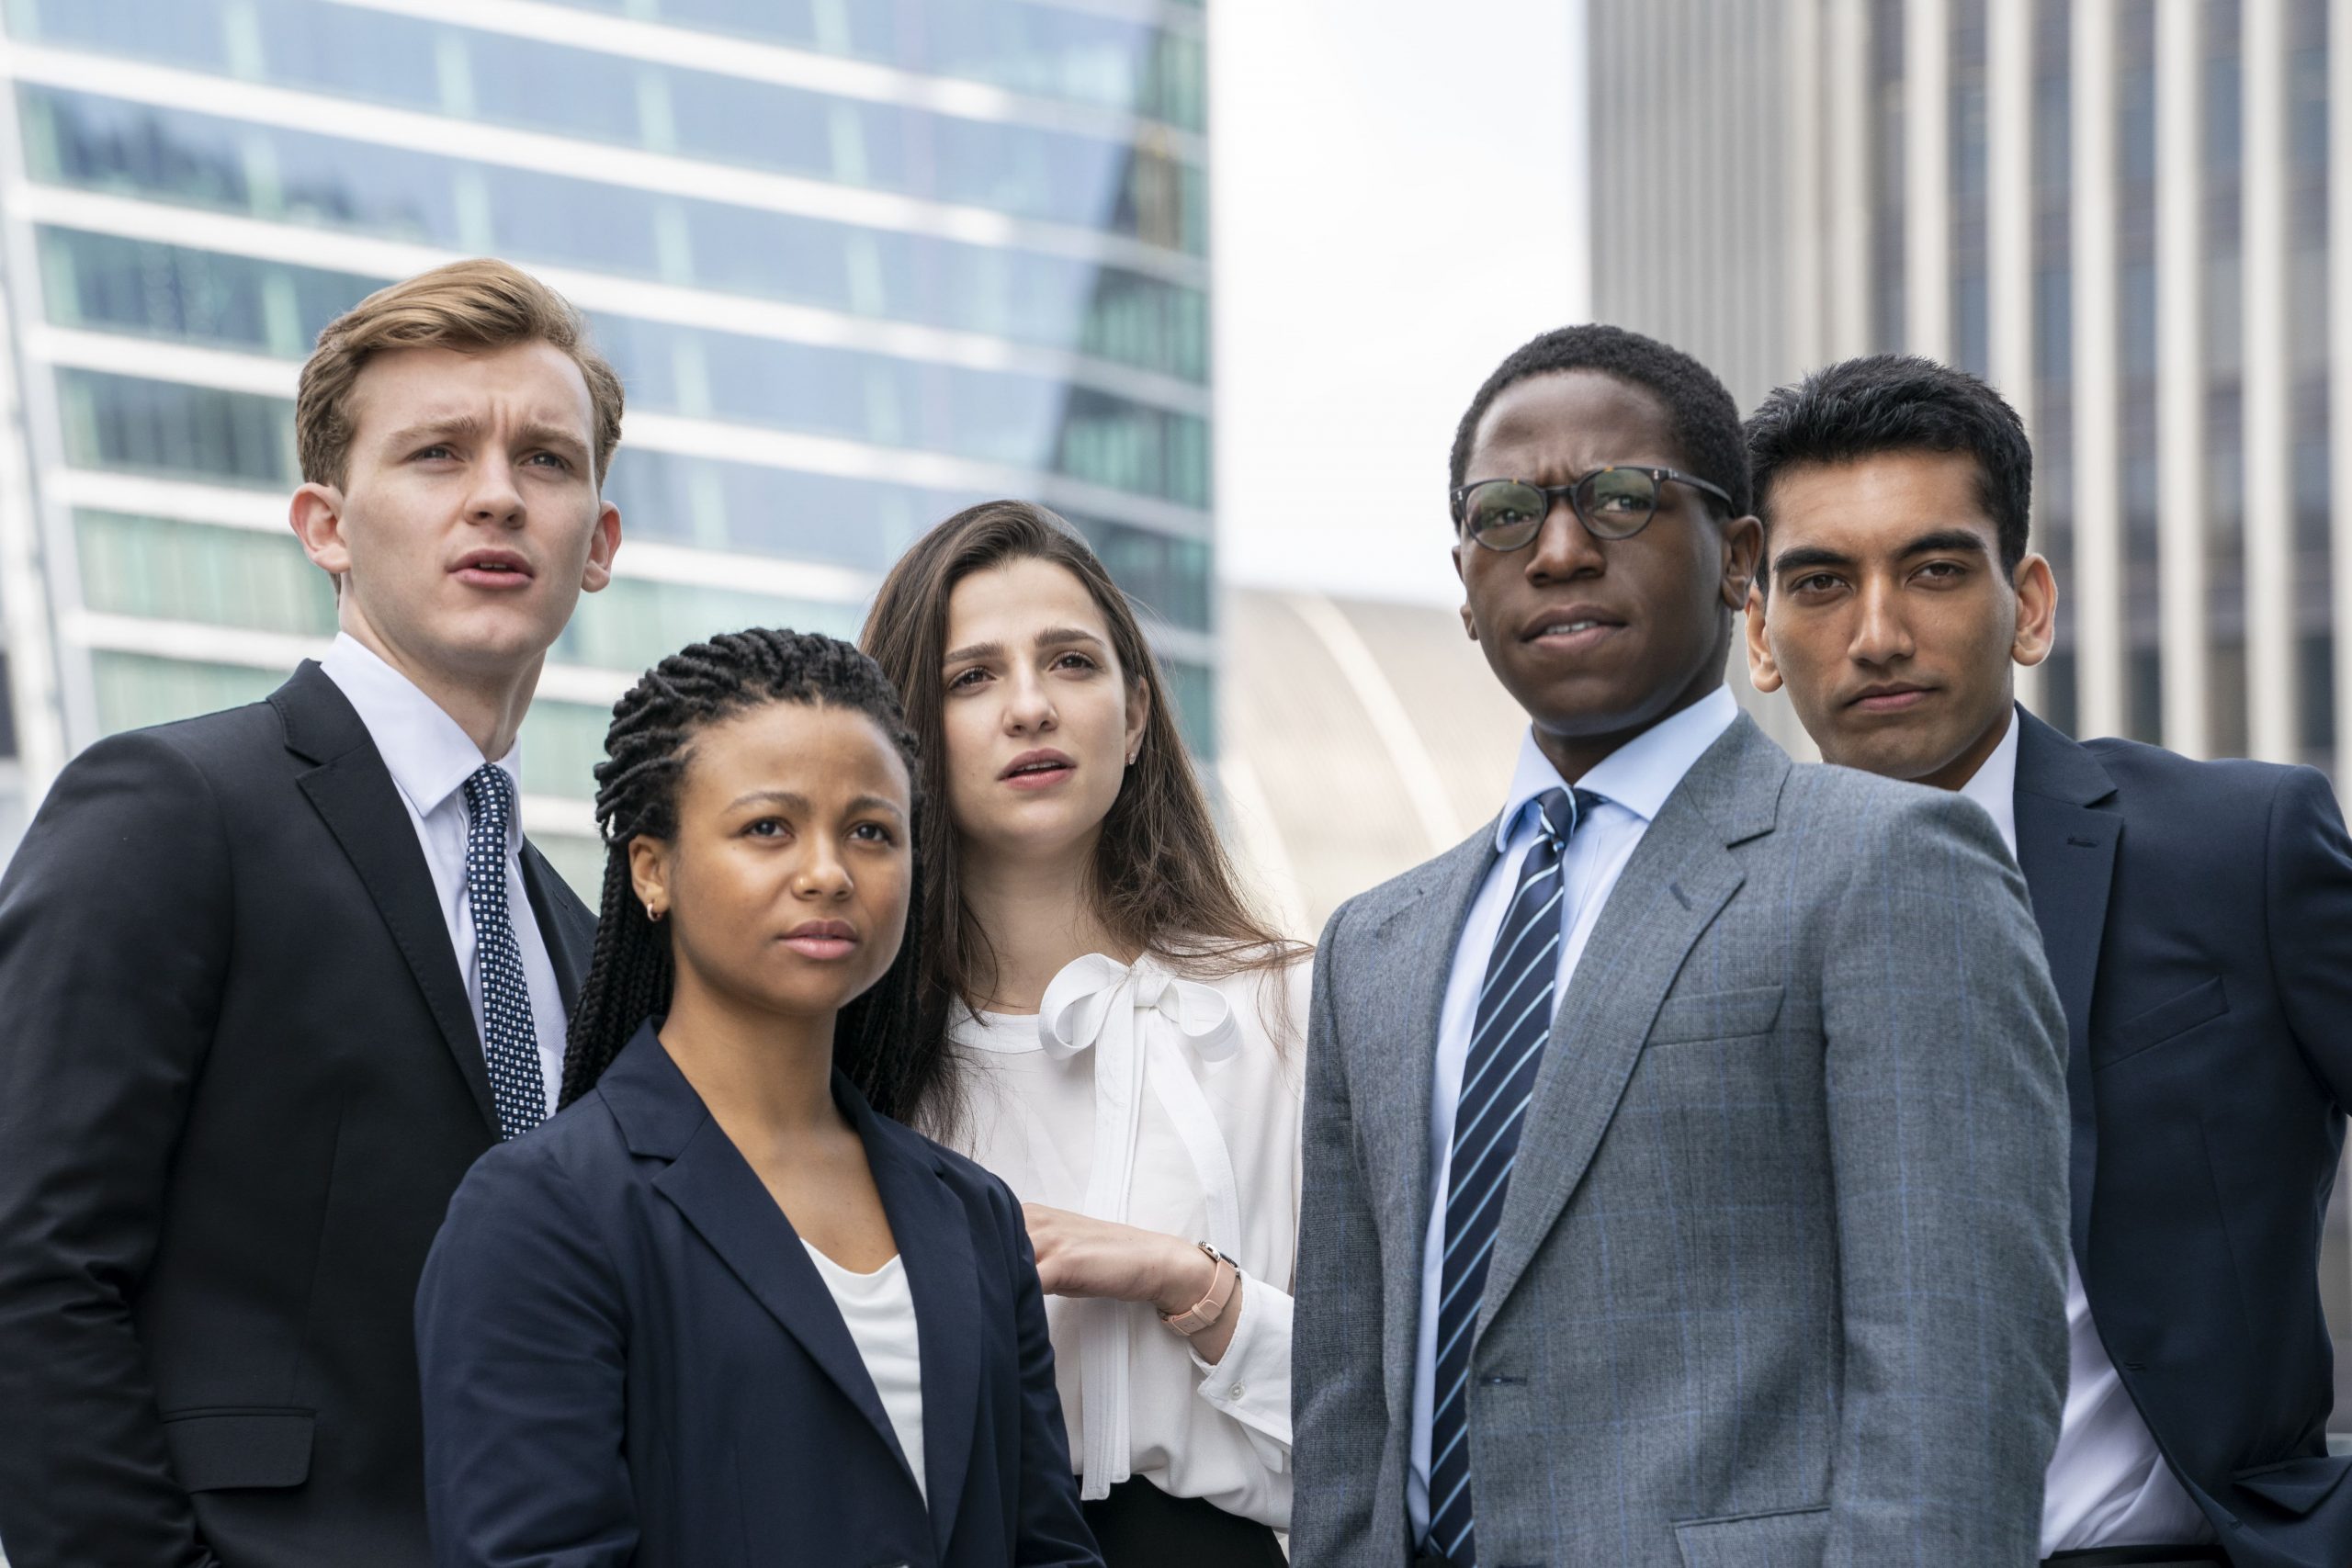 Foto de Jóvenes talentos detrás del grupo de recién graduados que protagoniza la serie “Industry” de HBO